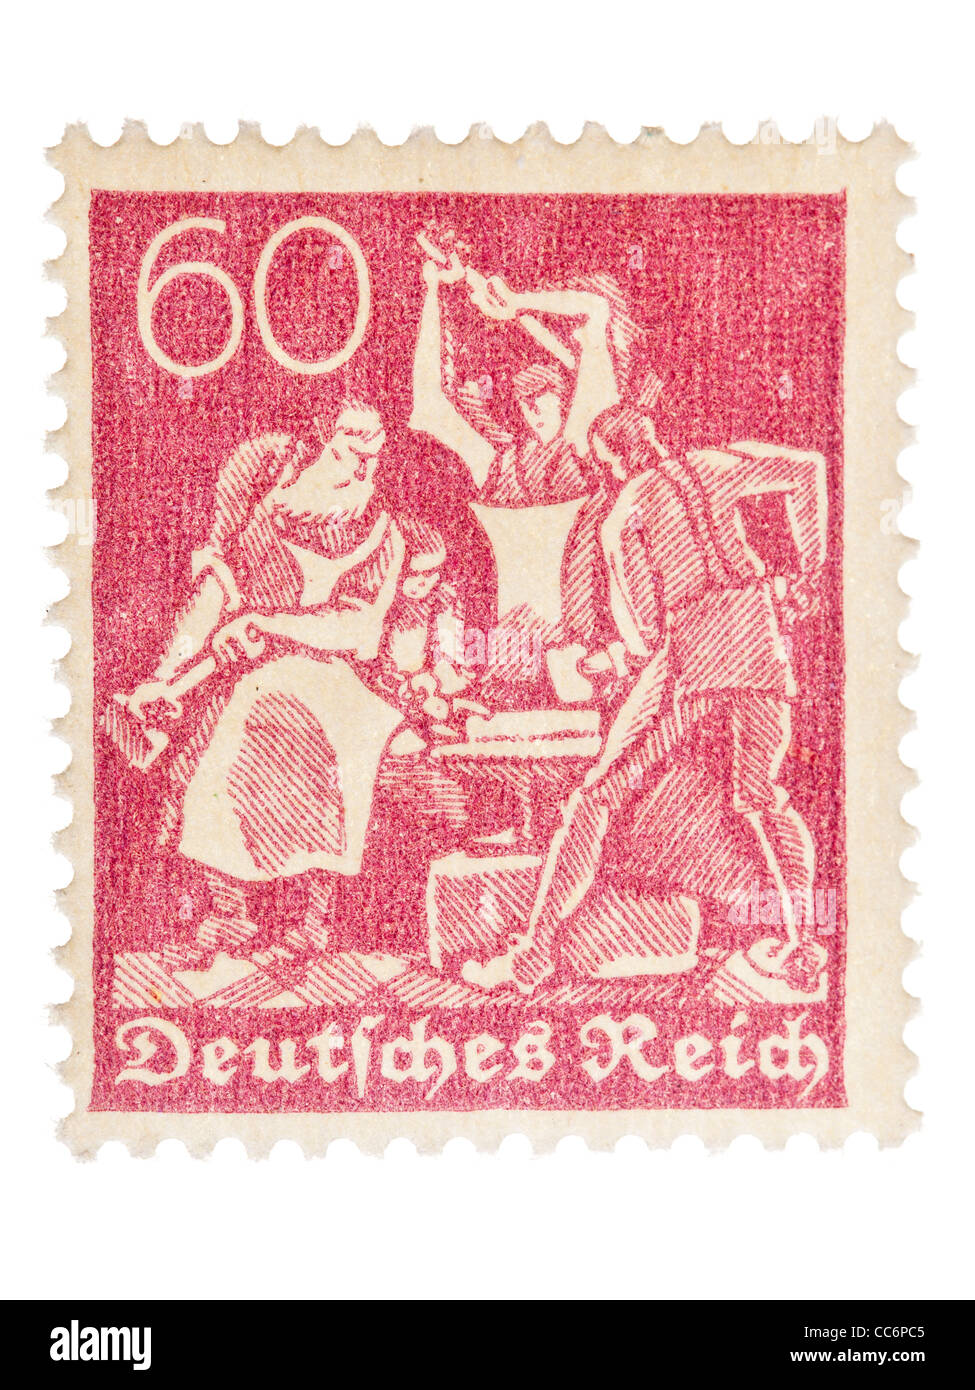 Postage stamp: German Reich, Blacksmith Workers, 1921, 60 pfennig, mint condition Stock Photo